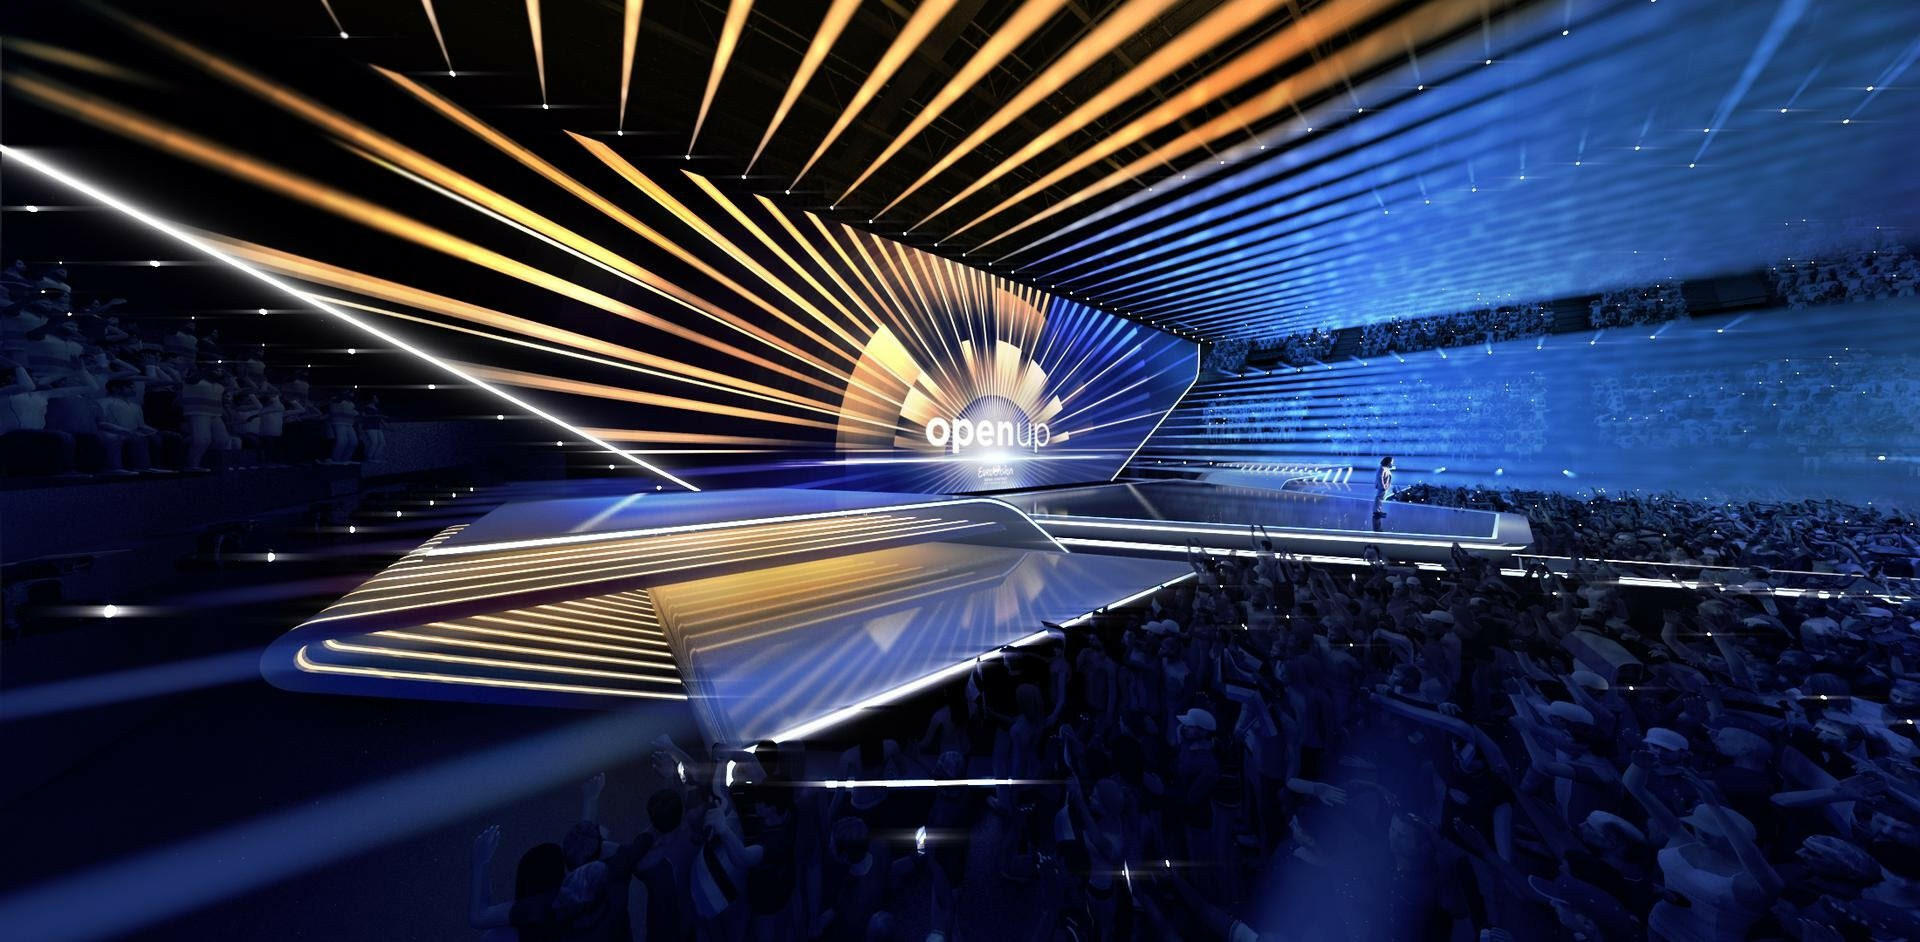 Eurovision 2020 - scénographie de la scène - Scénographe : Florian Wieder